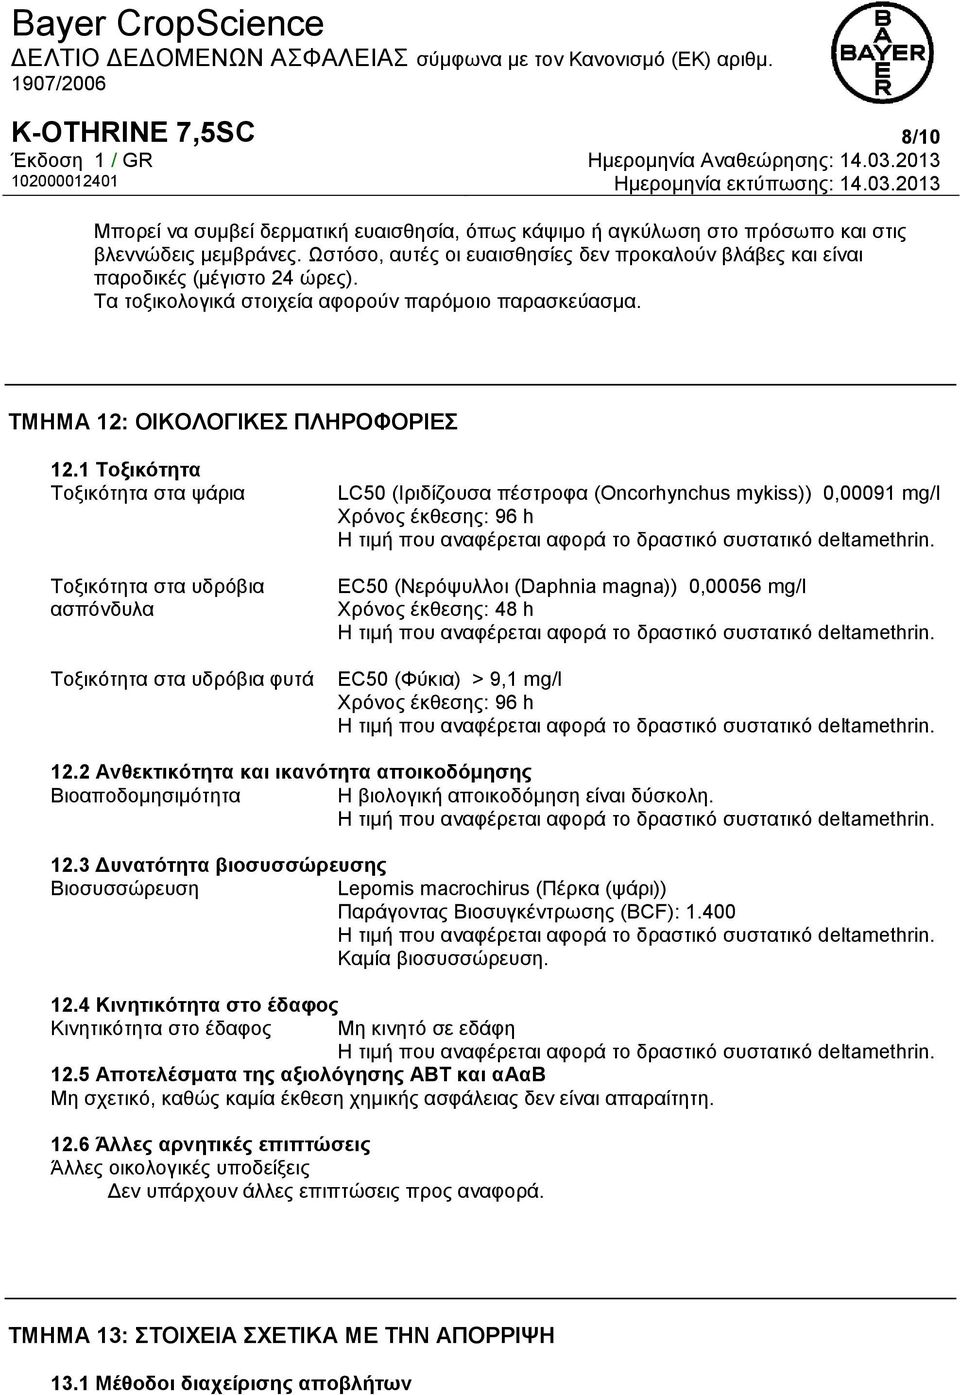 1 Τοξικότητα Τοξικότητα στα ψάρια Τοξικότητα στα υδρόβια ασπόνδυλα Τοξικότητα στα υδρόβια φυτά LC50 (Ιριδίζουσα πέστροφα (Oncorhynchus mykiss)) 0,00091 mg/l Χρόνος έκθεσης: 96 h EC50 (Νερόψυλλοι